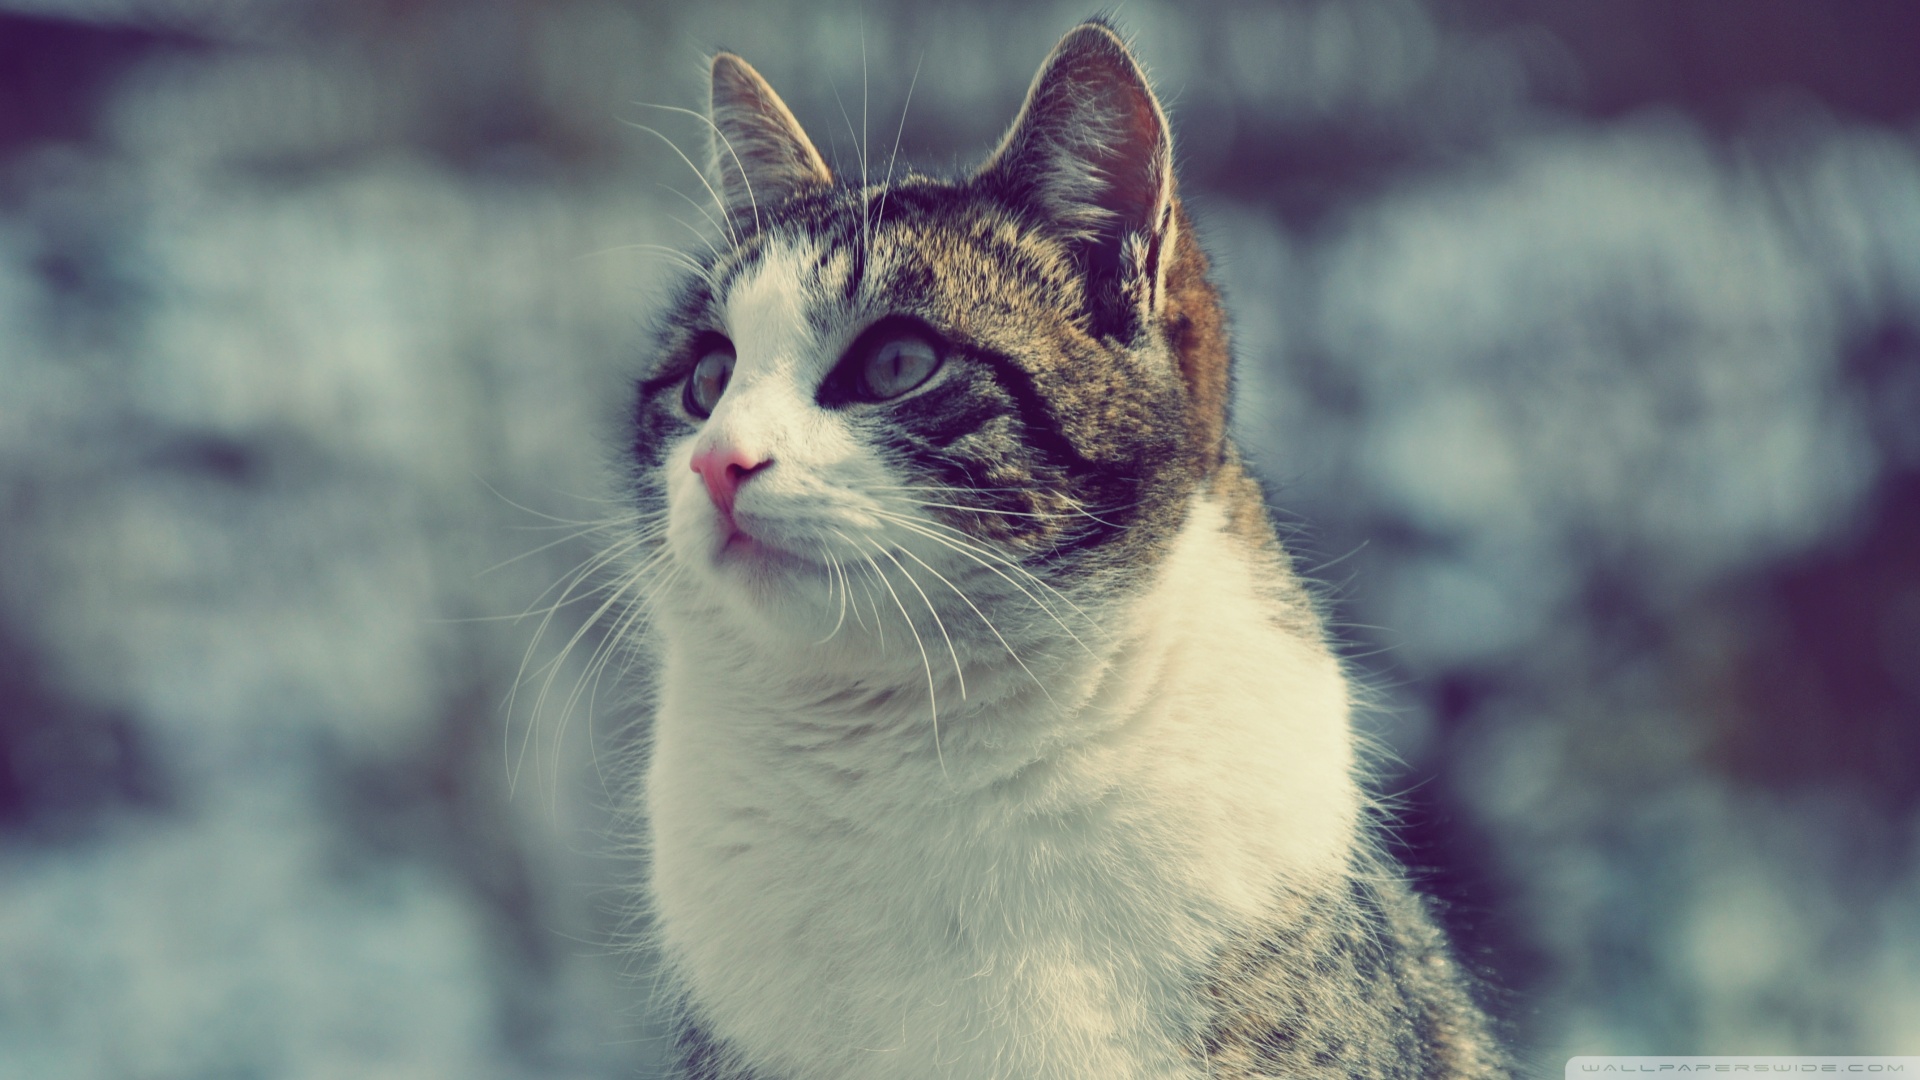 Kedi Temalı 25 Adet Duvar Kağıdı! (7) » Teknobeyin